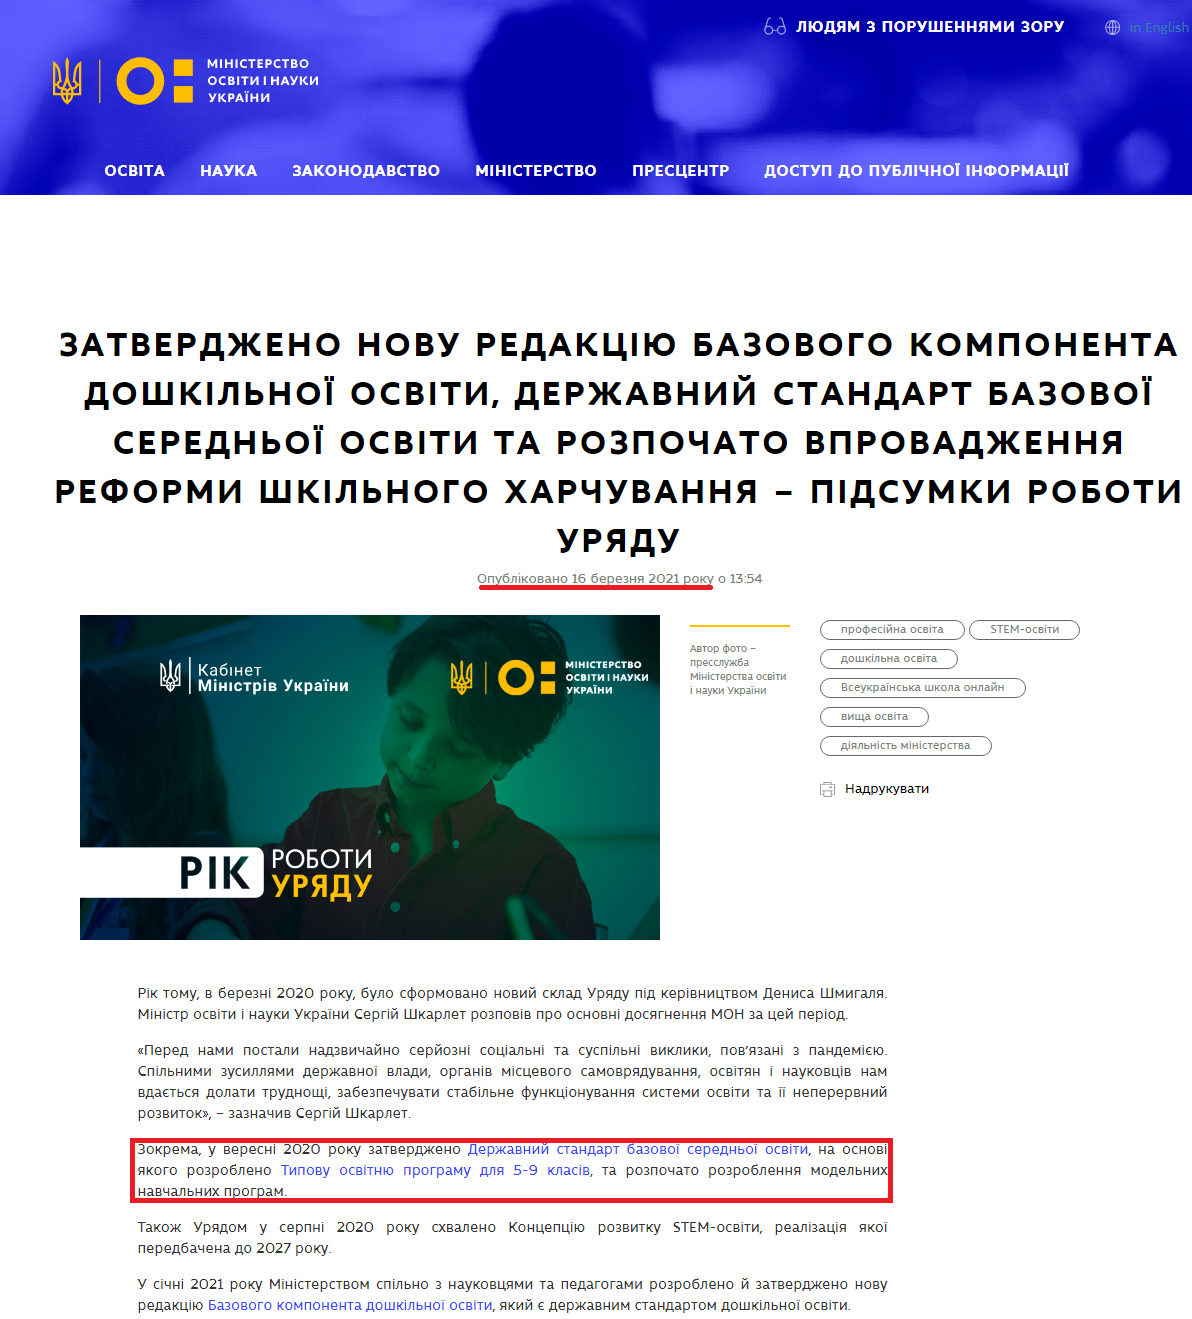 https://mon.gov.ua/ua/news/zatverdzheno-novu-redakciyu-bazovogo-komponenta-doshkilnoyi-osviti-derzhavnij-standart-bazovoyi-serednoyi-osviti-ta-rozpochato-vprovadzhennya-reformi-shkilnogo-harchuvannya-pidsumki-roboti-uryadu